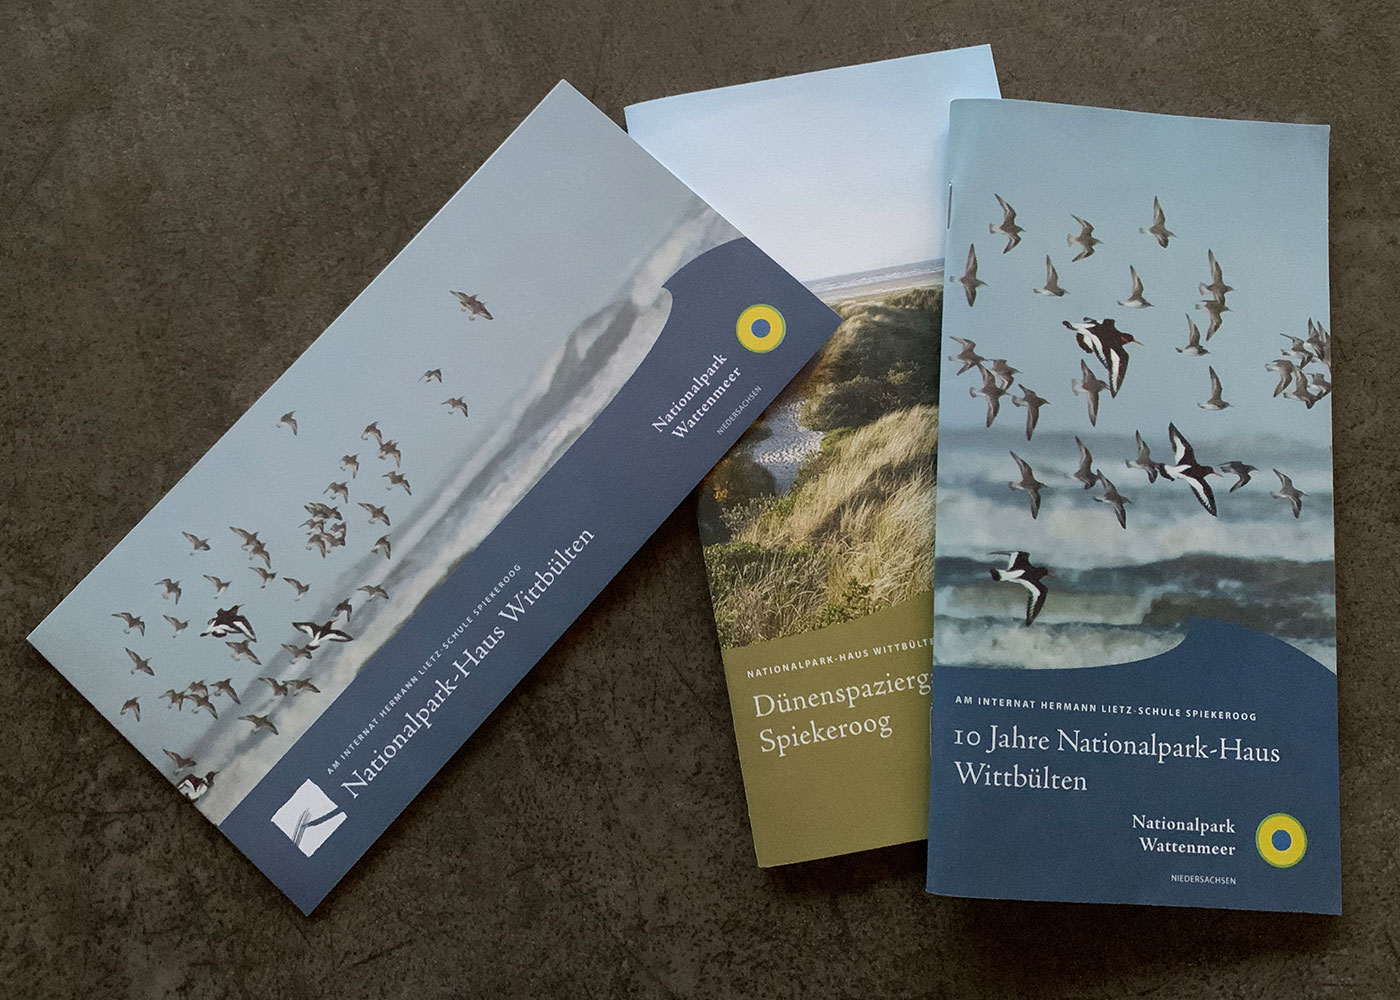 Informations-Material für Nationalpark Wattenmeer Niedersachsen - Teil 1